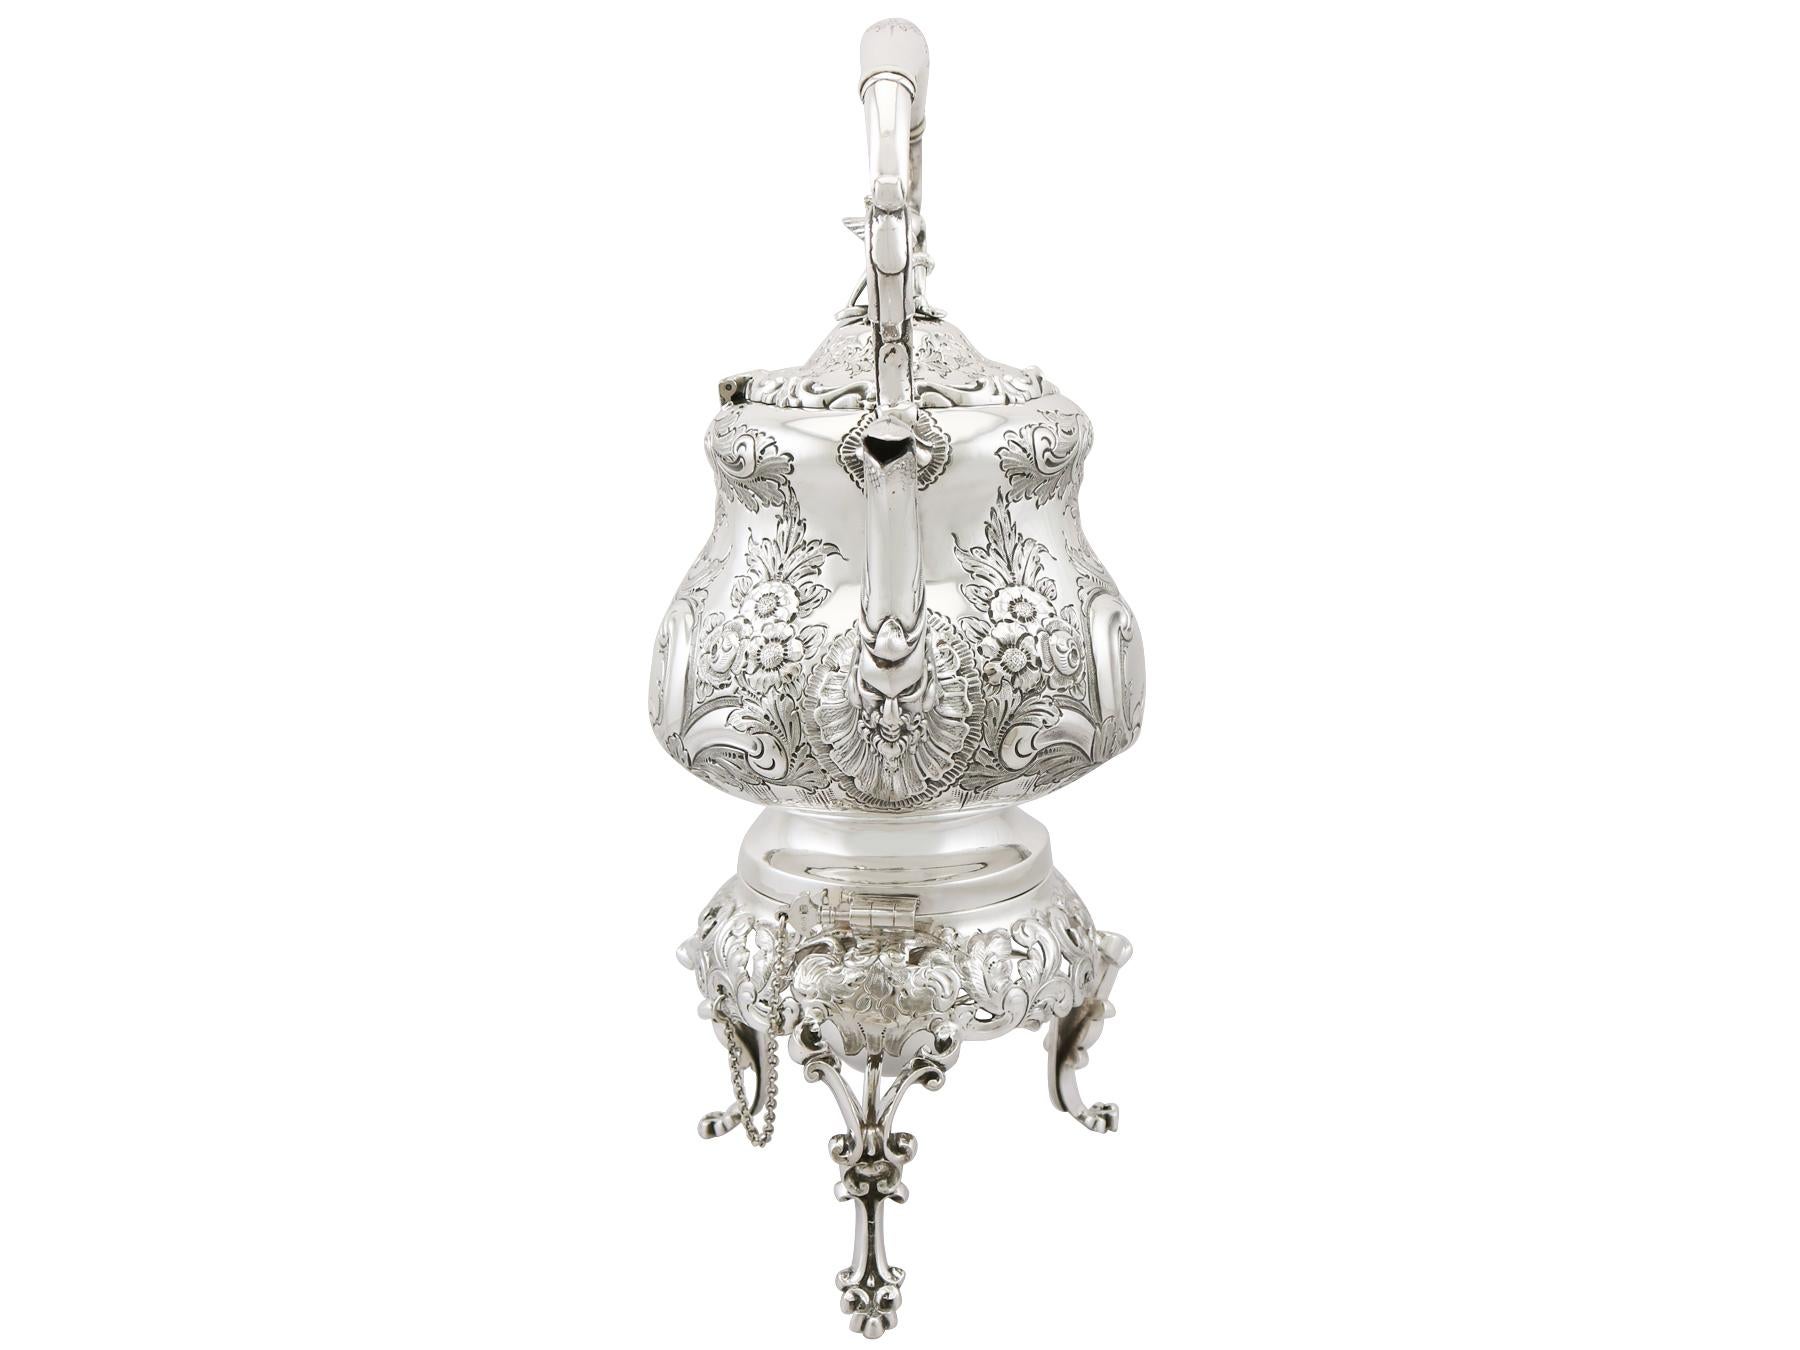 British Antique Victorian Sterling Silver Louis Spirit Kettle, 1898